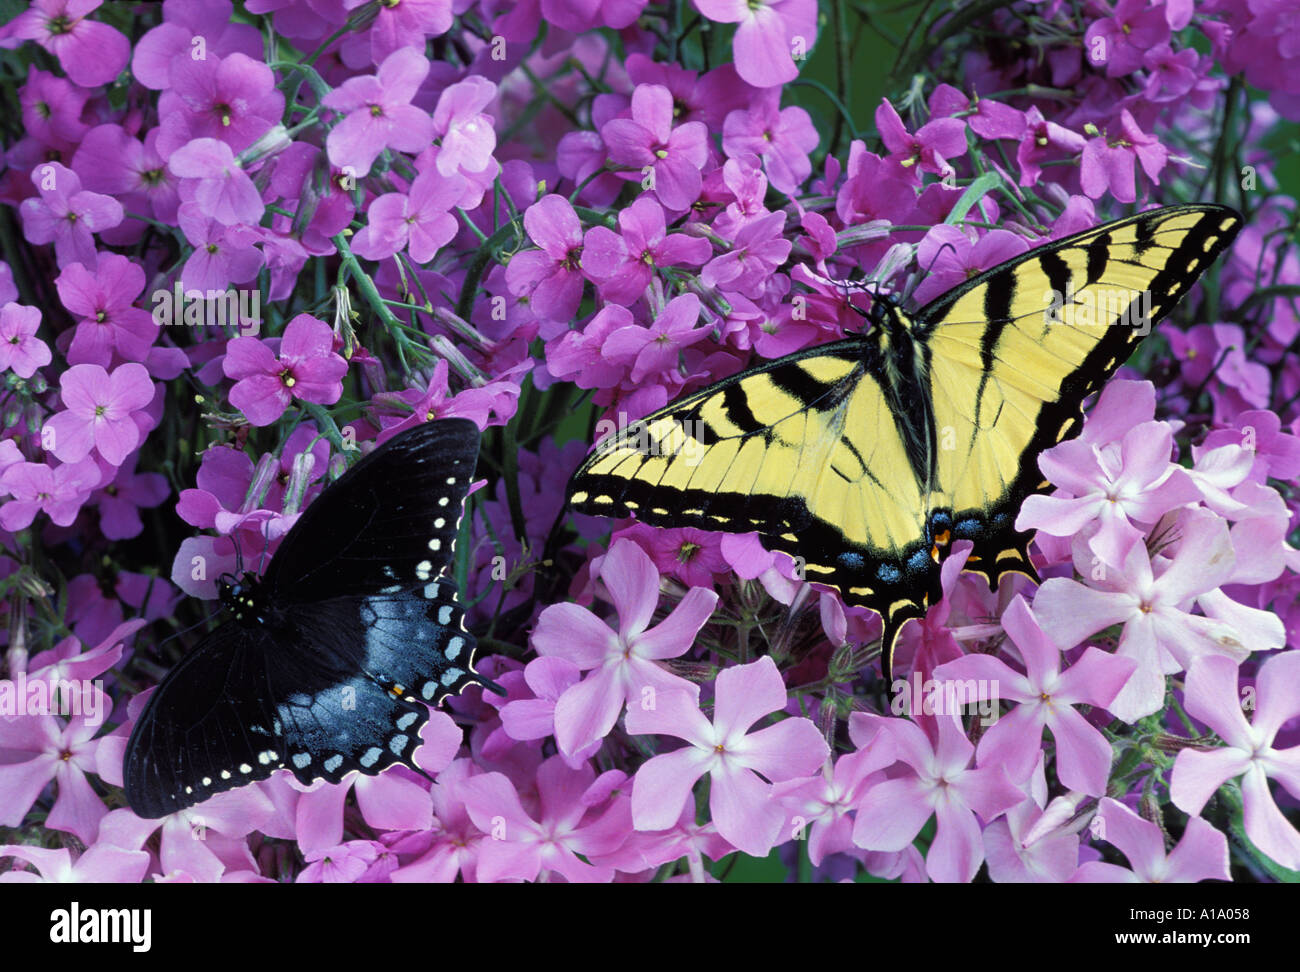 Zwei verschiedene Arten von Schwalbenschwanz Schmetterling - spicebush und Tigerswallowtails - Zander auf wilde lila Phlox Wildblumen, Midwest USA Stockfoto